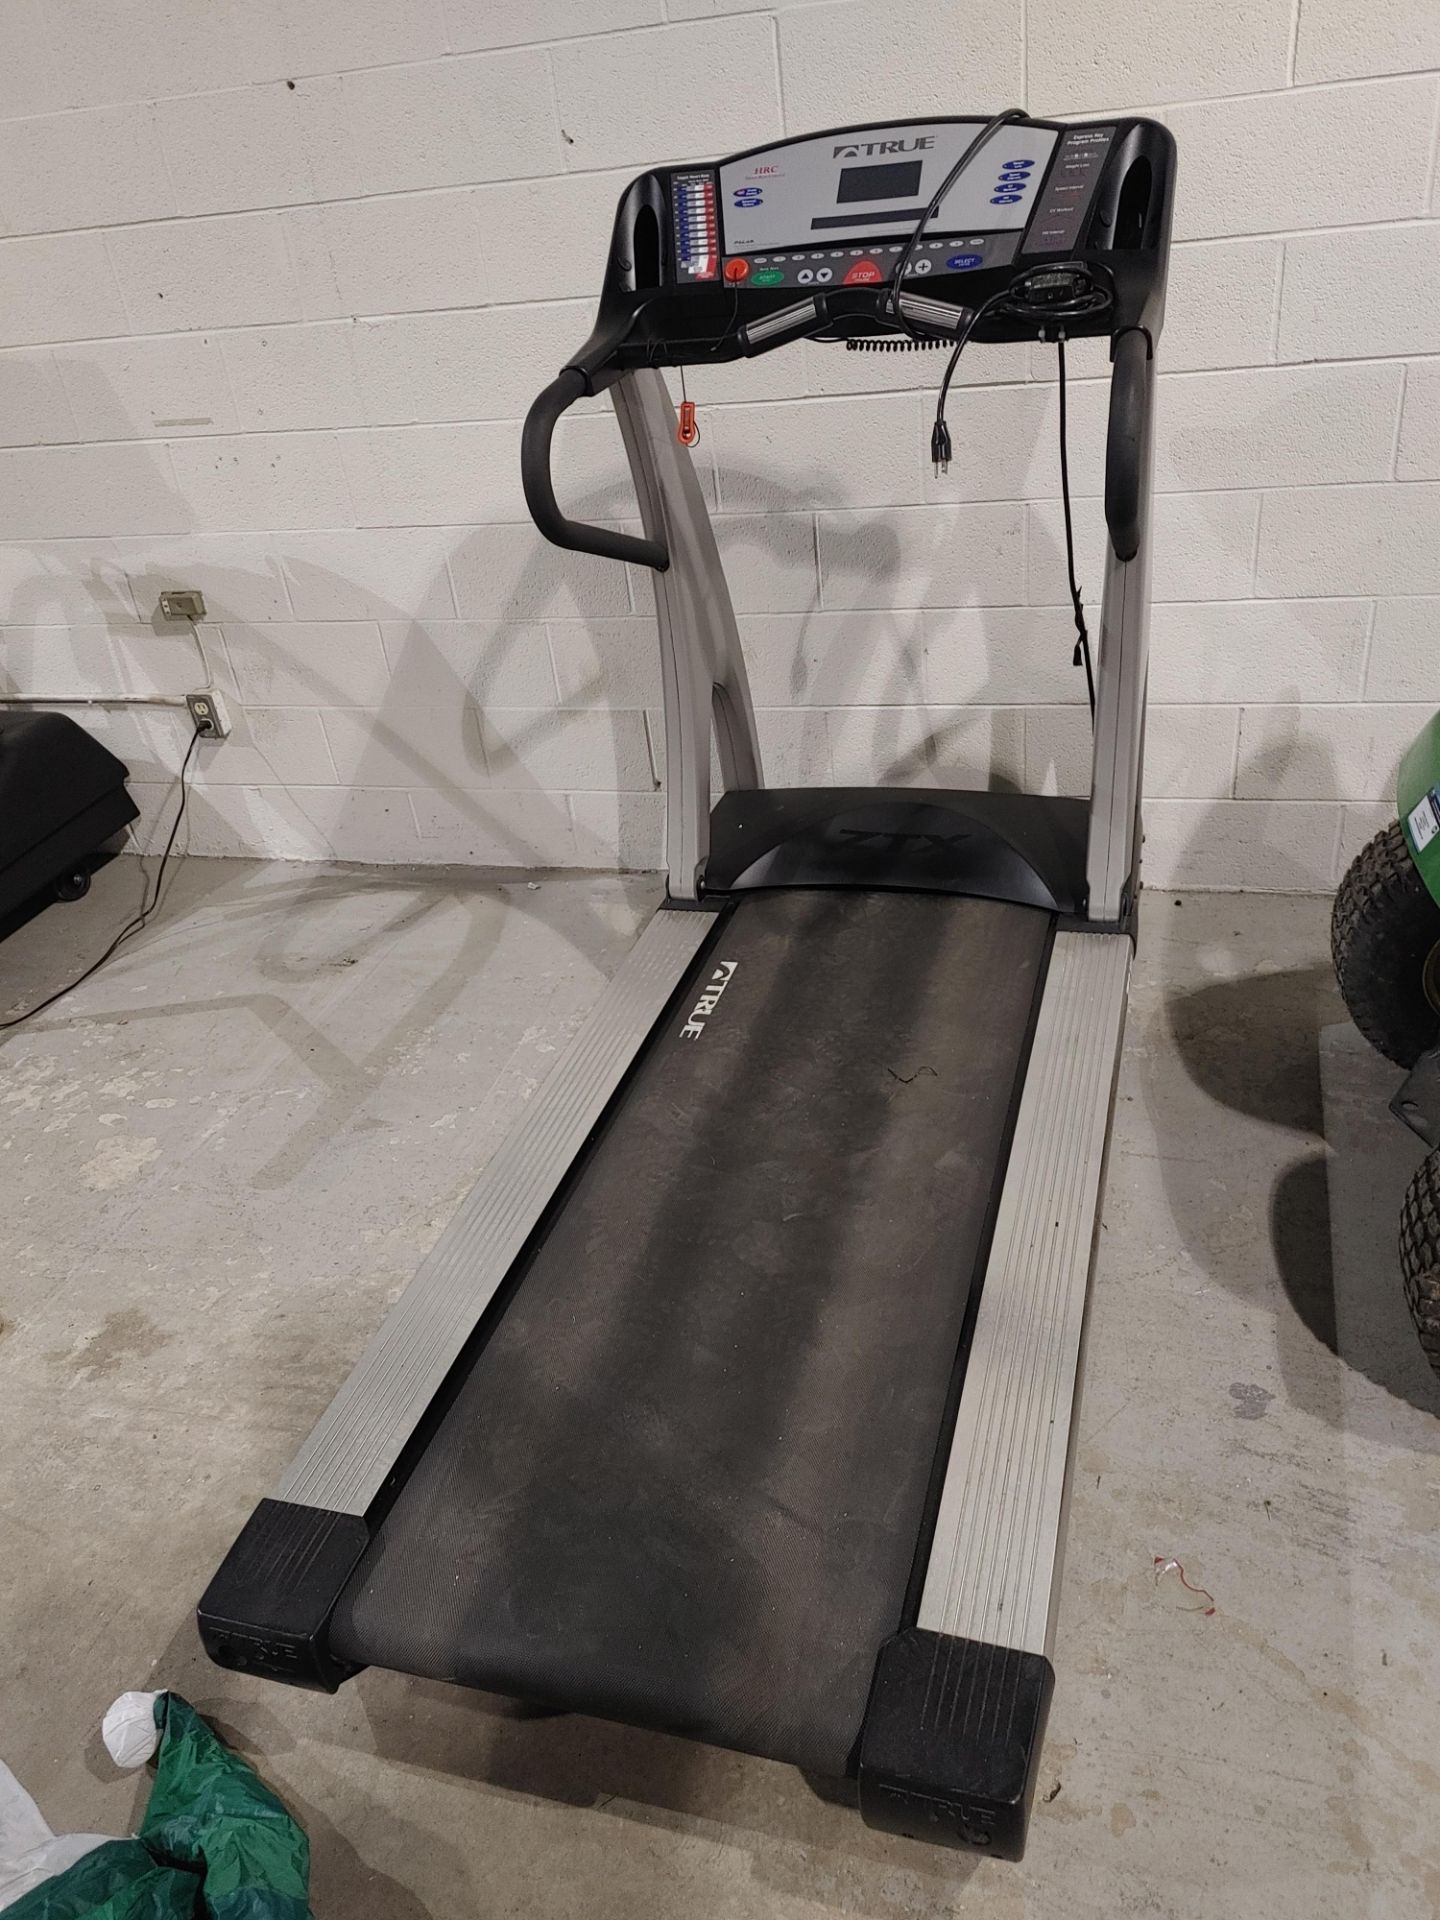 True Fitness Z9.1 Treadmill - Image 2 of 3